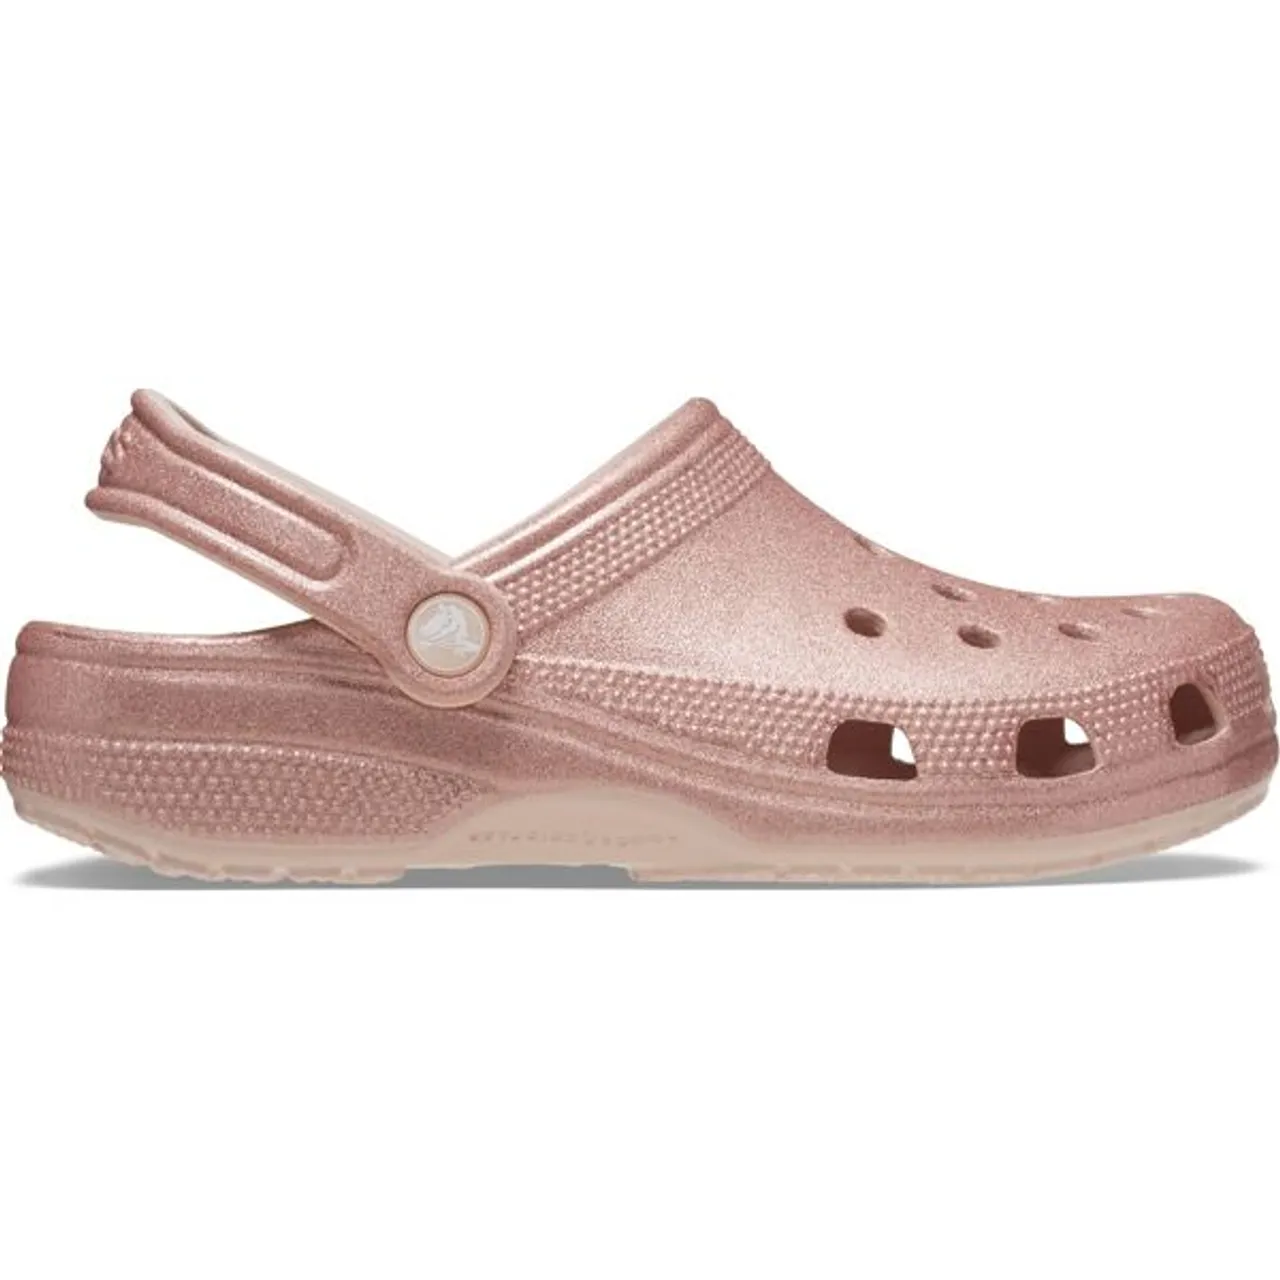 Hausschuh CROCS "Classic Glitter Clog, Badesandale" Gr. 36, rosa (rosa glitter) Damen Schuhe Pantoffel